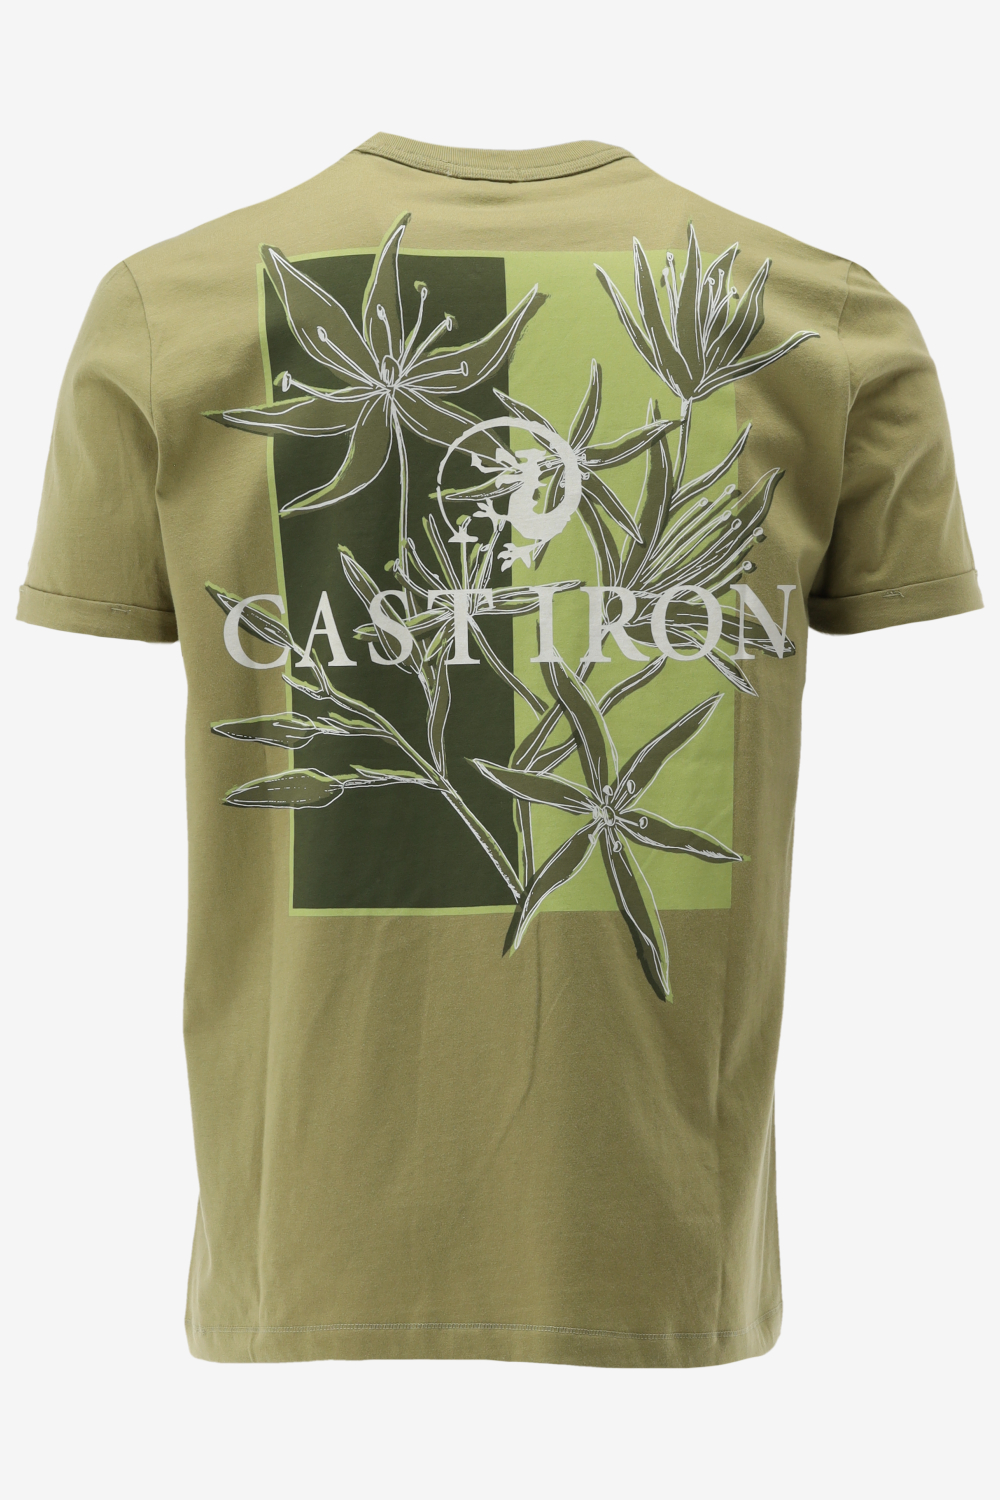 Cast Iron T-shirt 